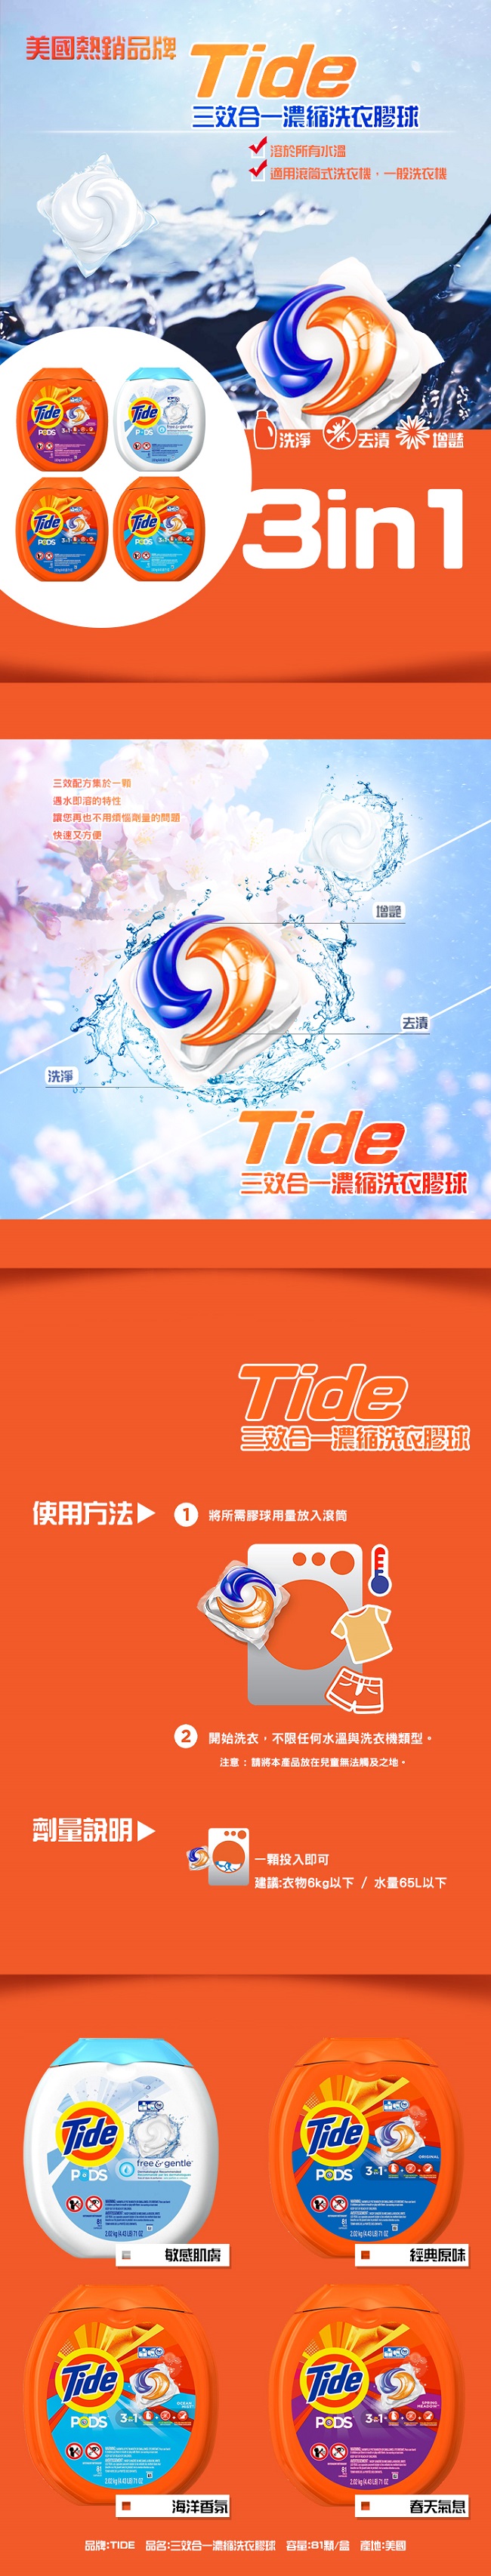 Tide 三效合一 濃縮洗衣膠球(海洋香氛) 81入